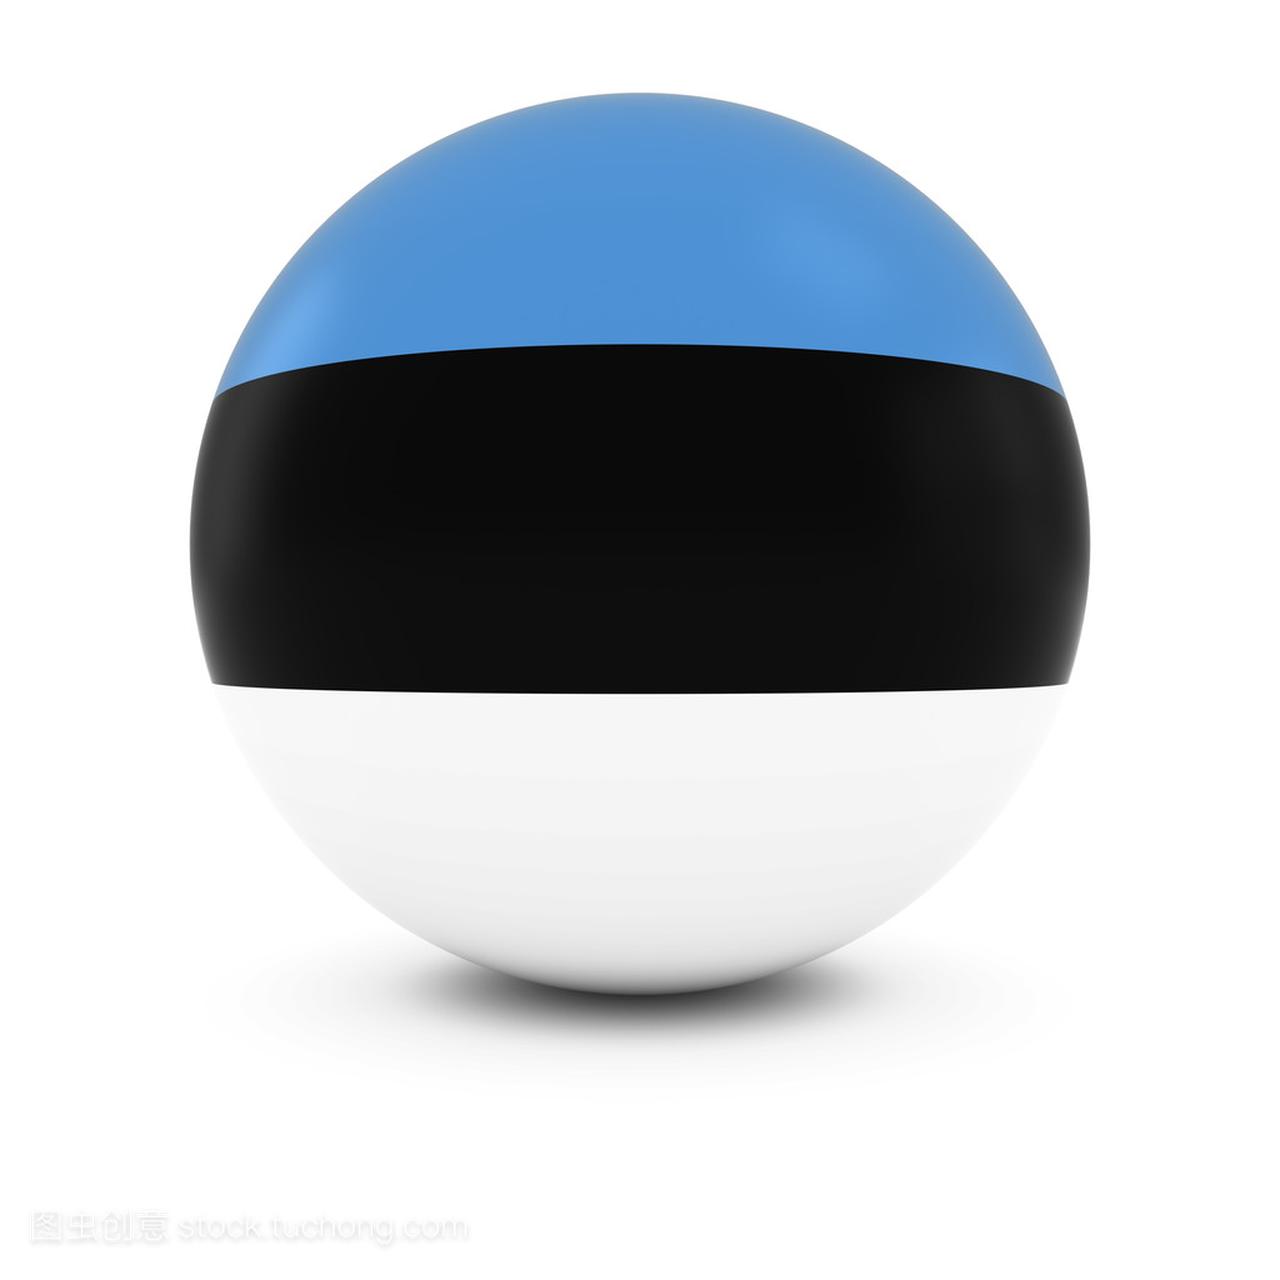 爱沙尼亚国旗球-爱沙尼亚孤立球体上国旗